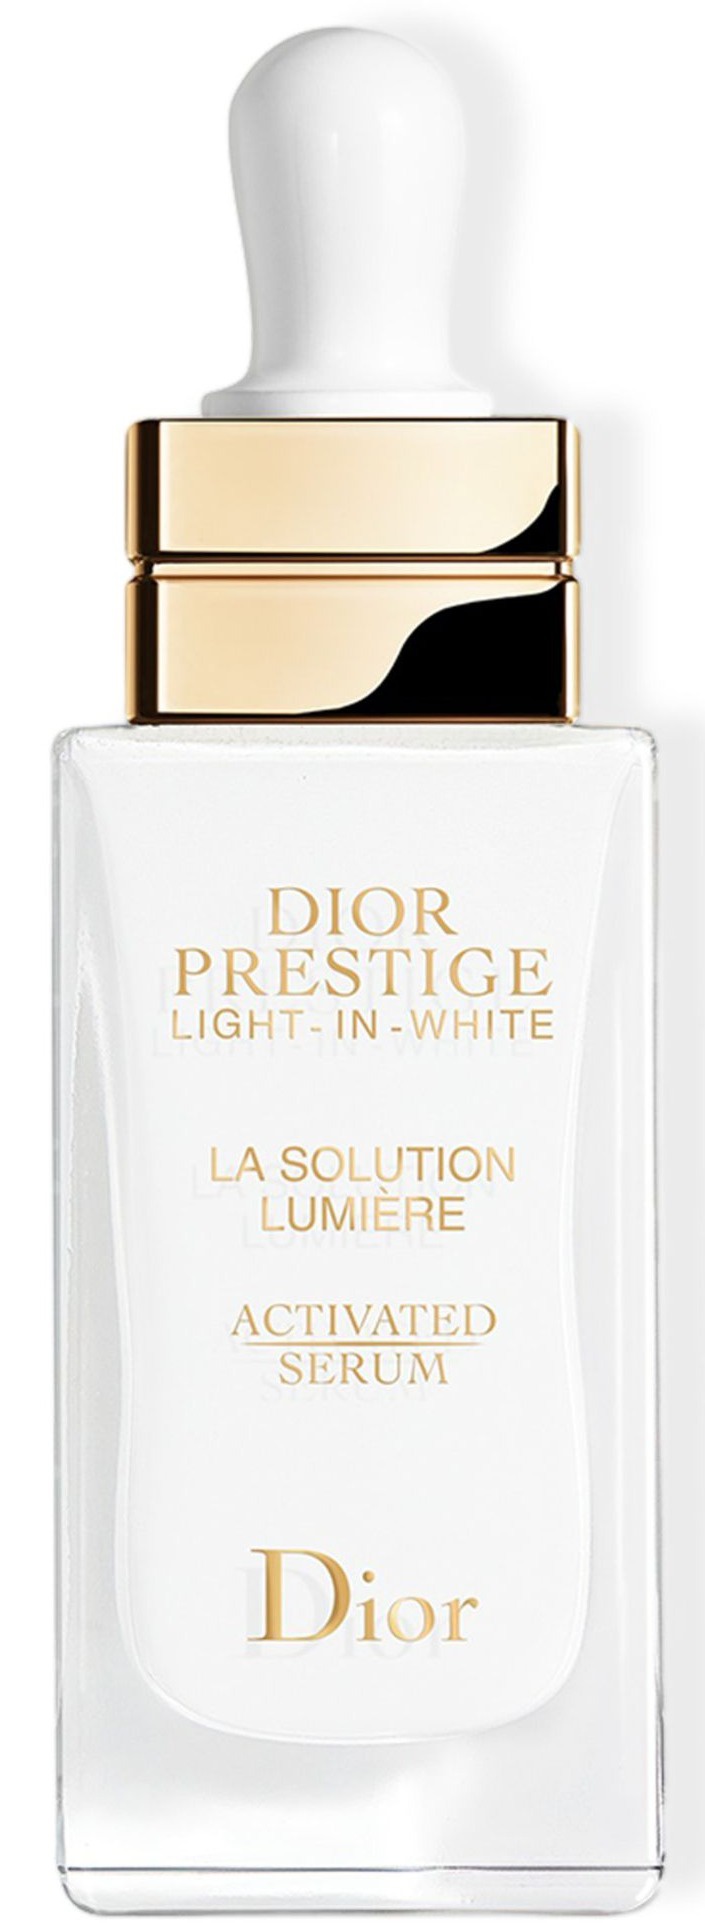 Dior Prestige Light-in-White La Solution Lumière Activated Serum